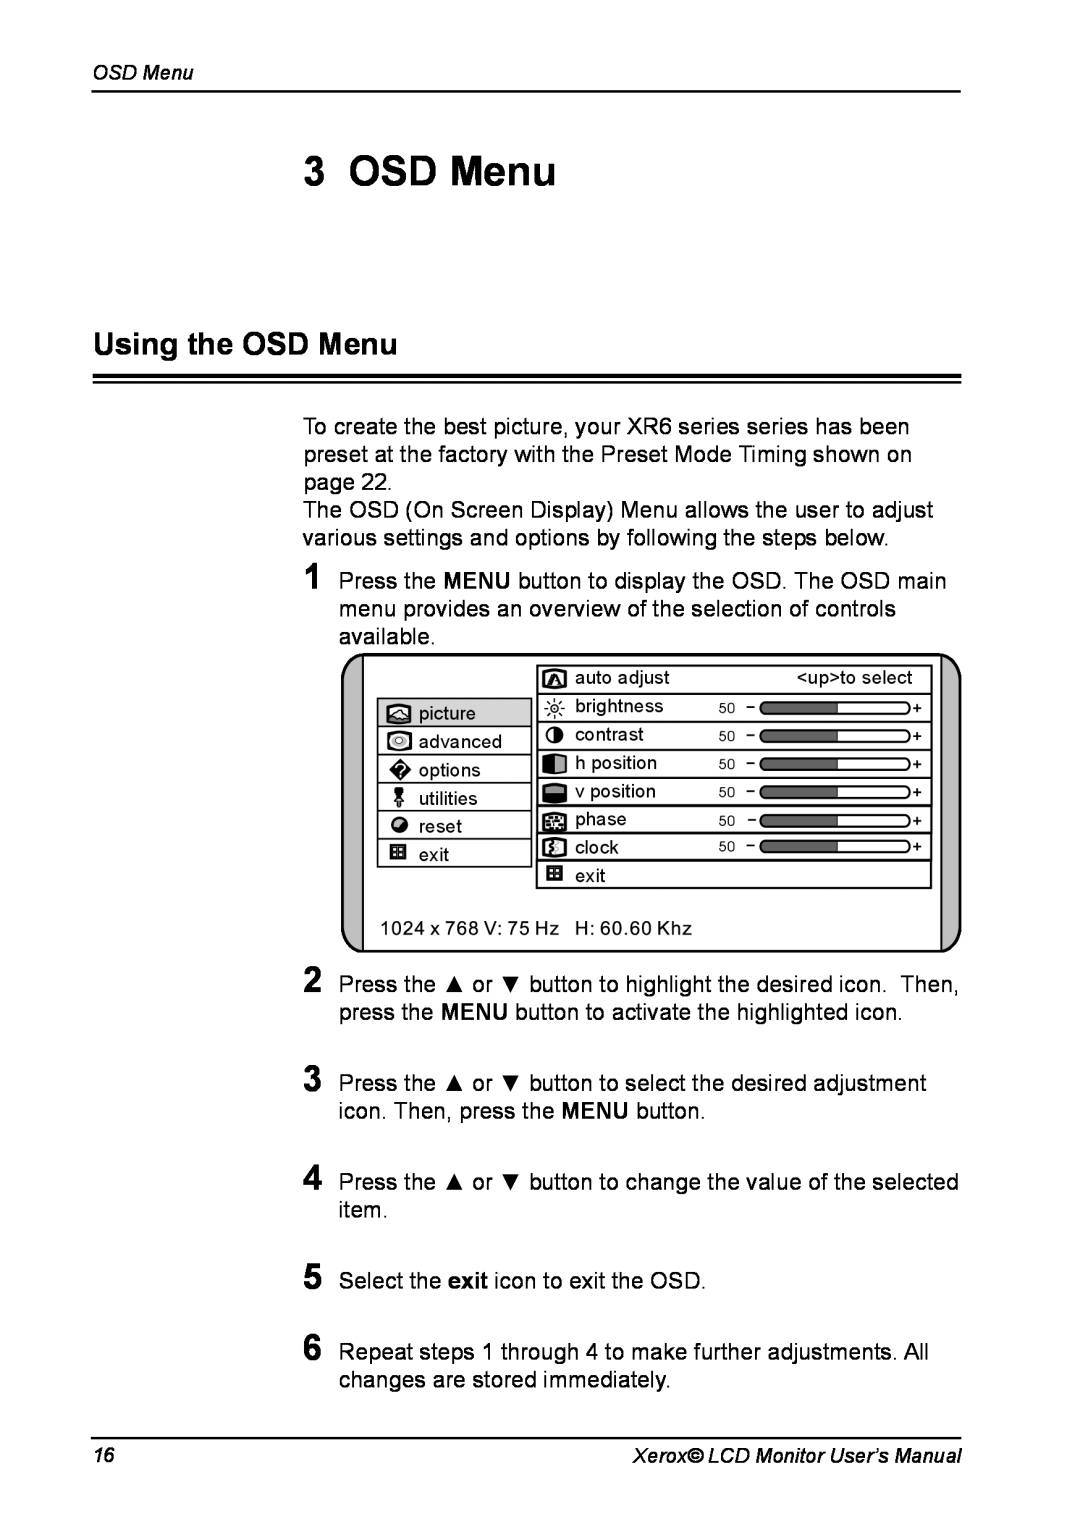 Xerox XR6 Series manual Using the OSD Menu 